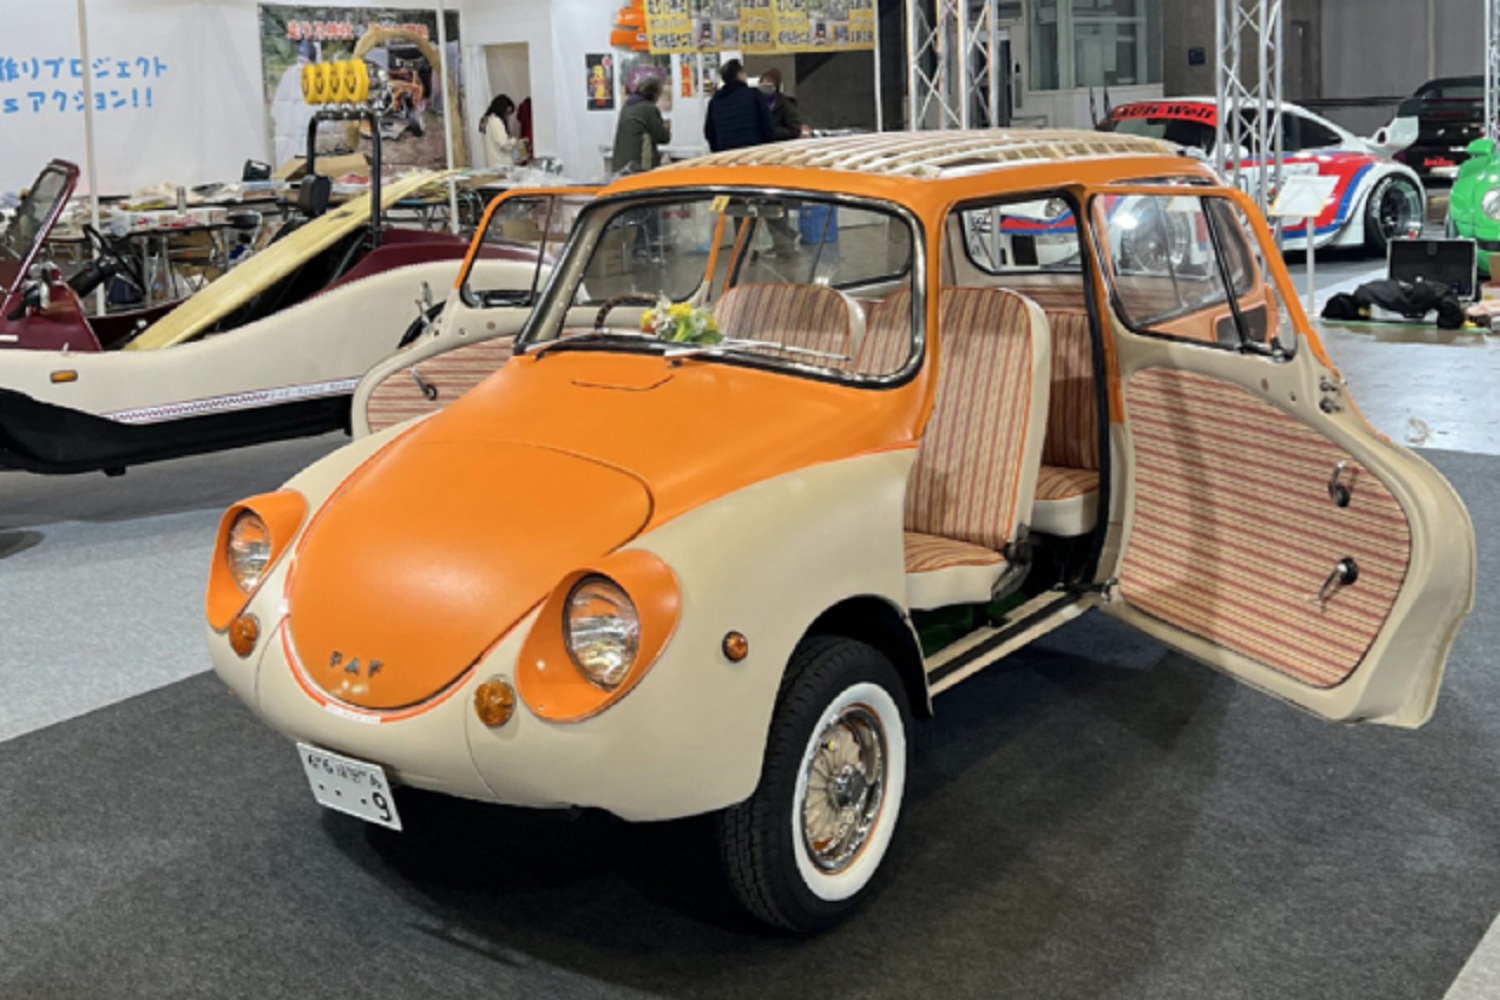  Subaru 360 bản 1968 với mui màu cam gợi  cảm xúc mùa hè